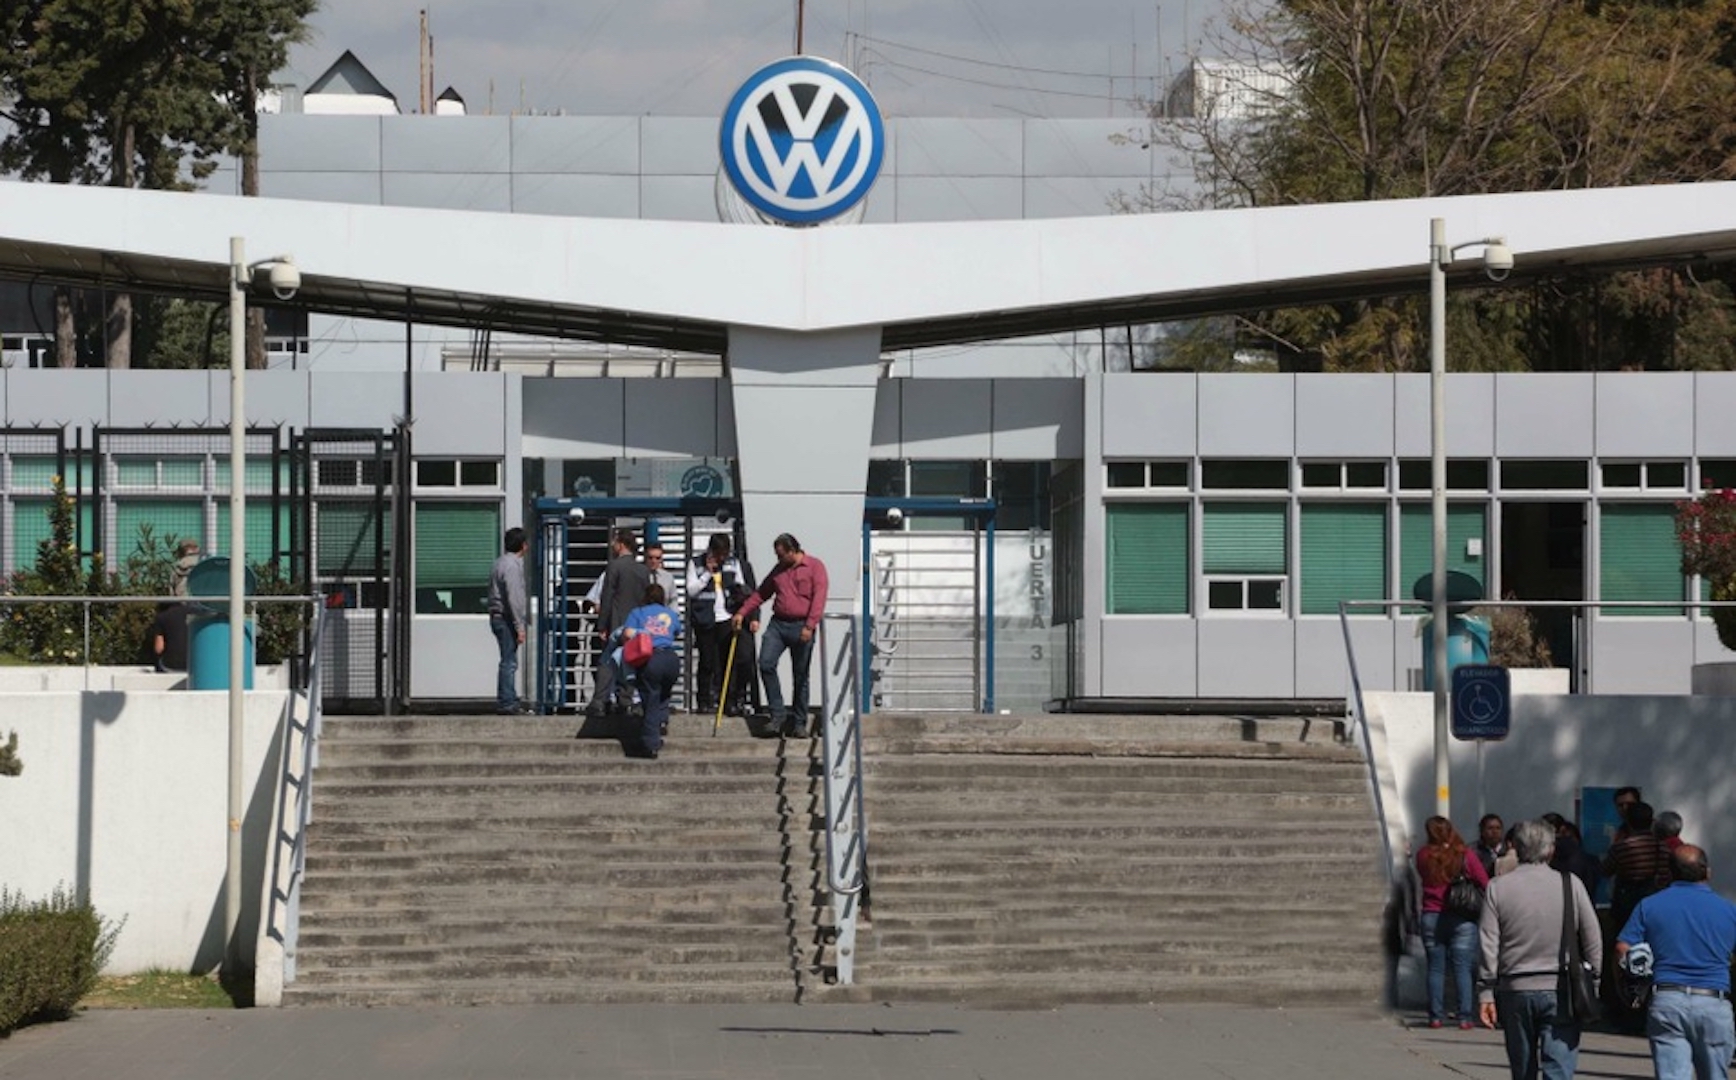 Barbosa Huerta emitirá decreto para evitar regreso de labores, de la VW y Audi